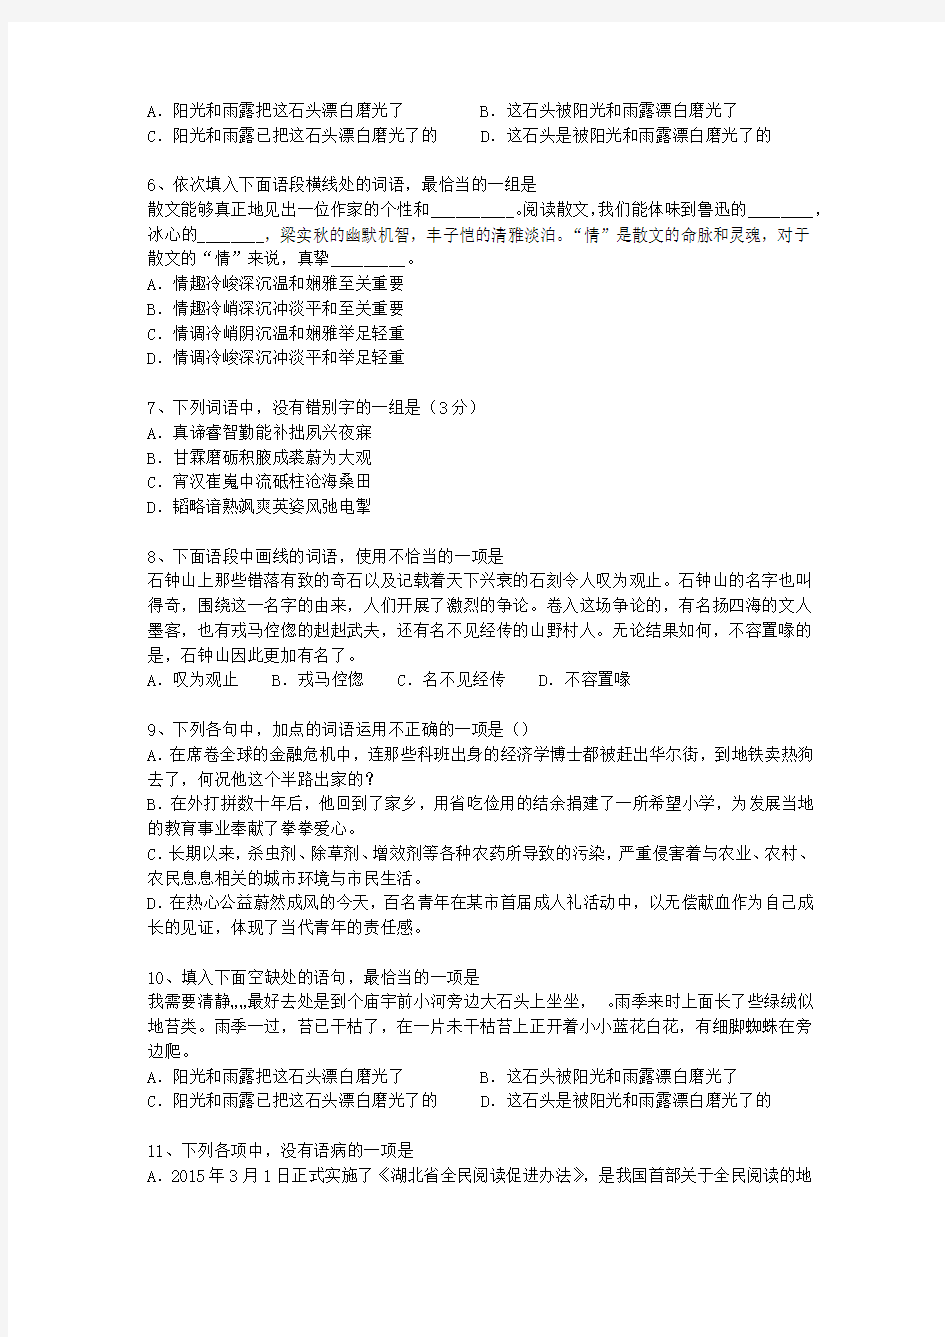 2014香港特别行政区语文试卷真题最新考试试题库(完整版)